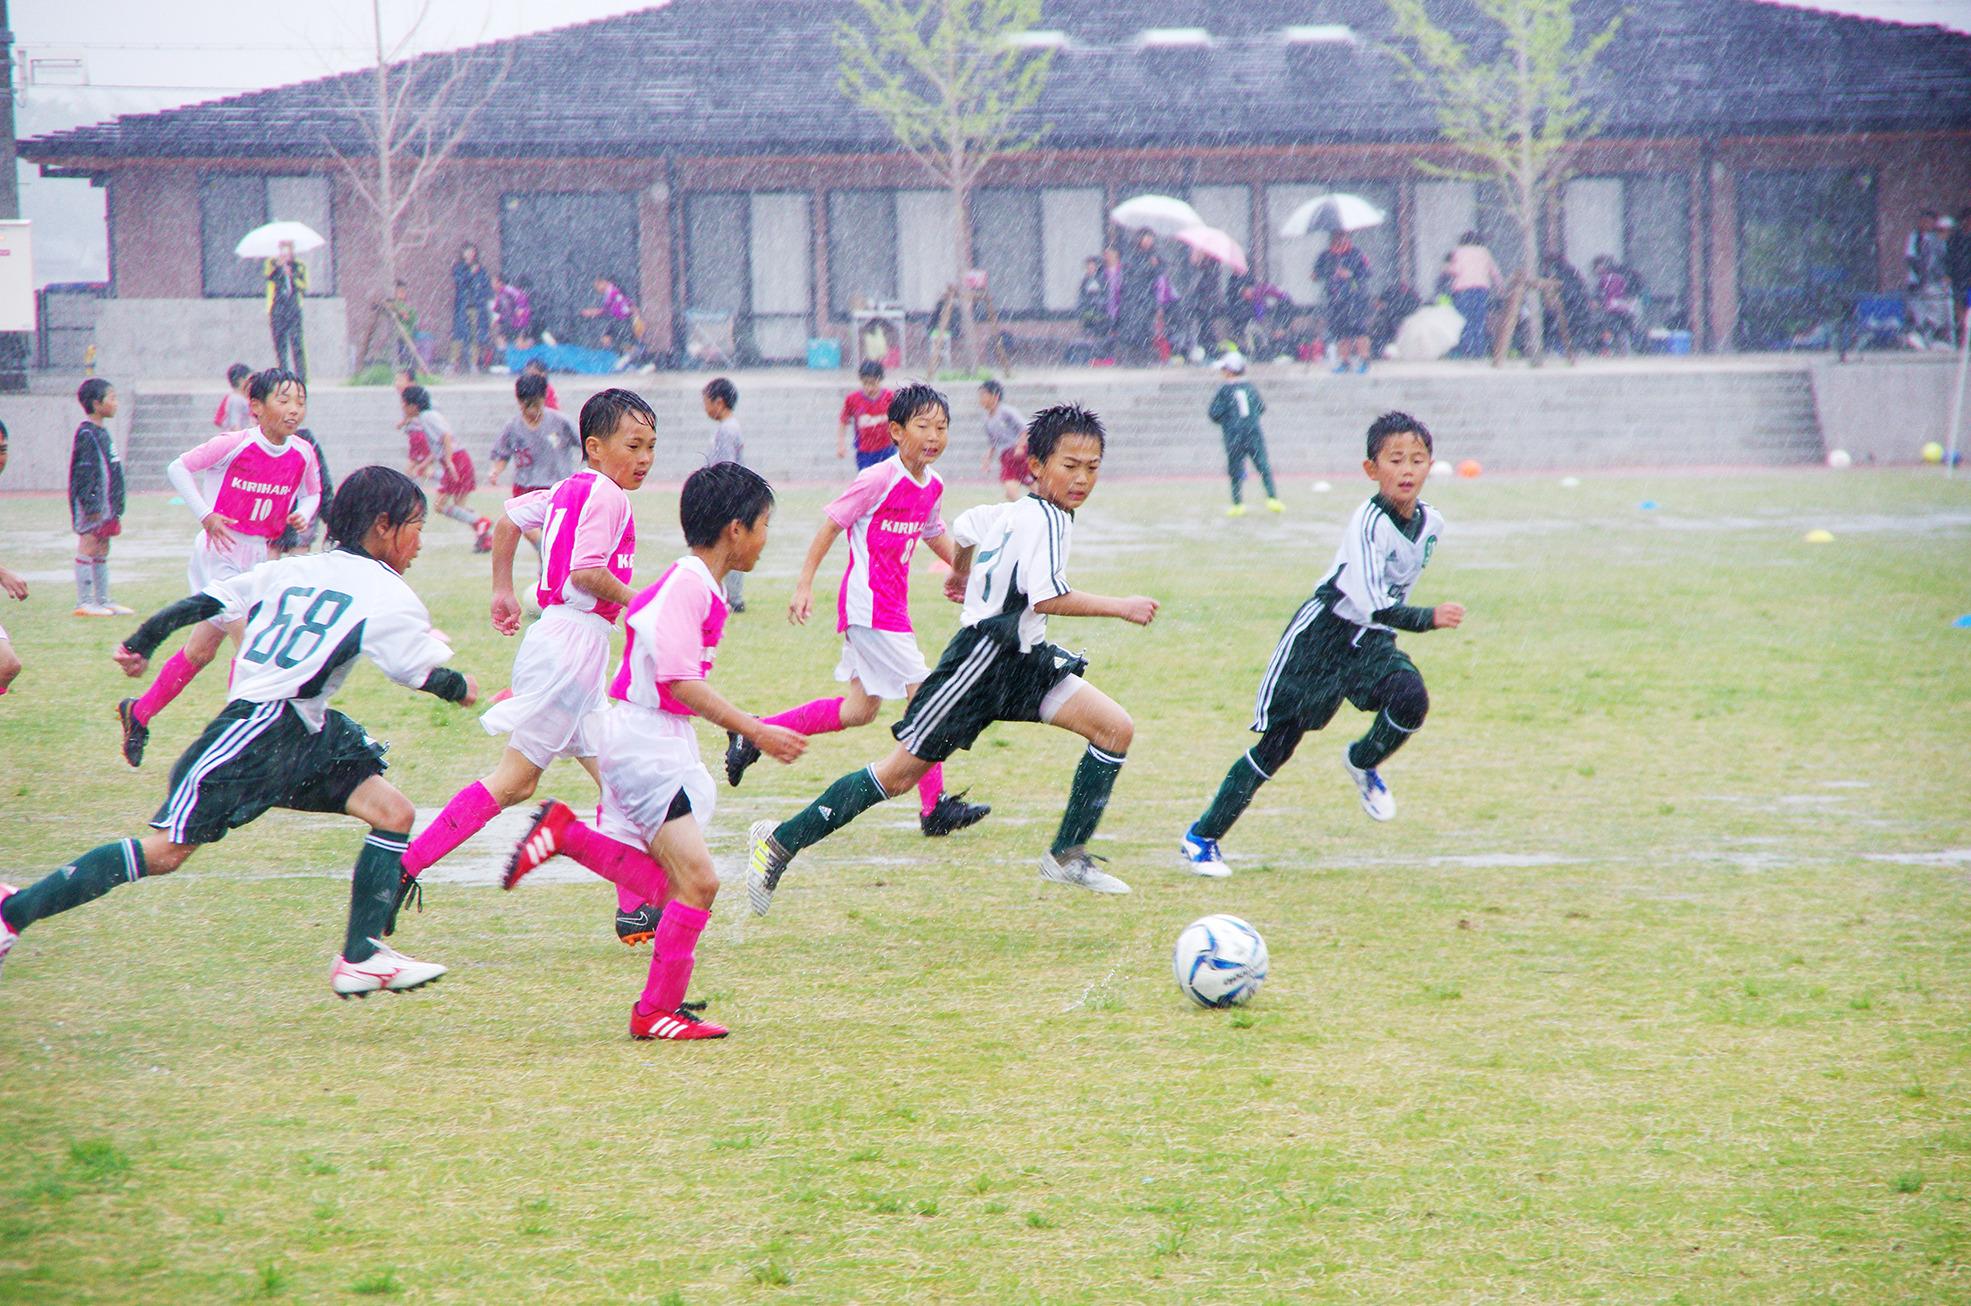 第15回若葉カップ：ピンクのユニフォームと白黒のユニフォームを着た子供たちがサッカーをしている写真